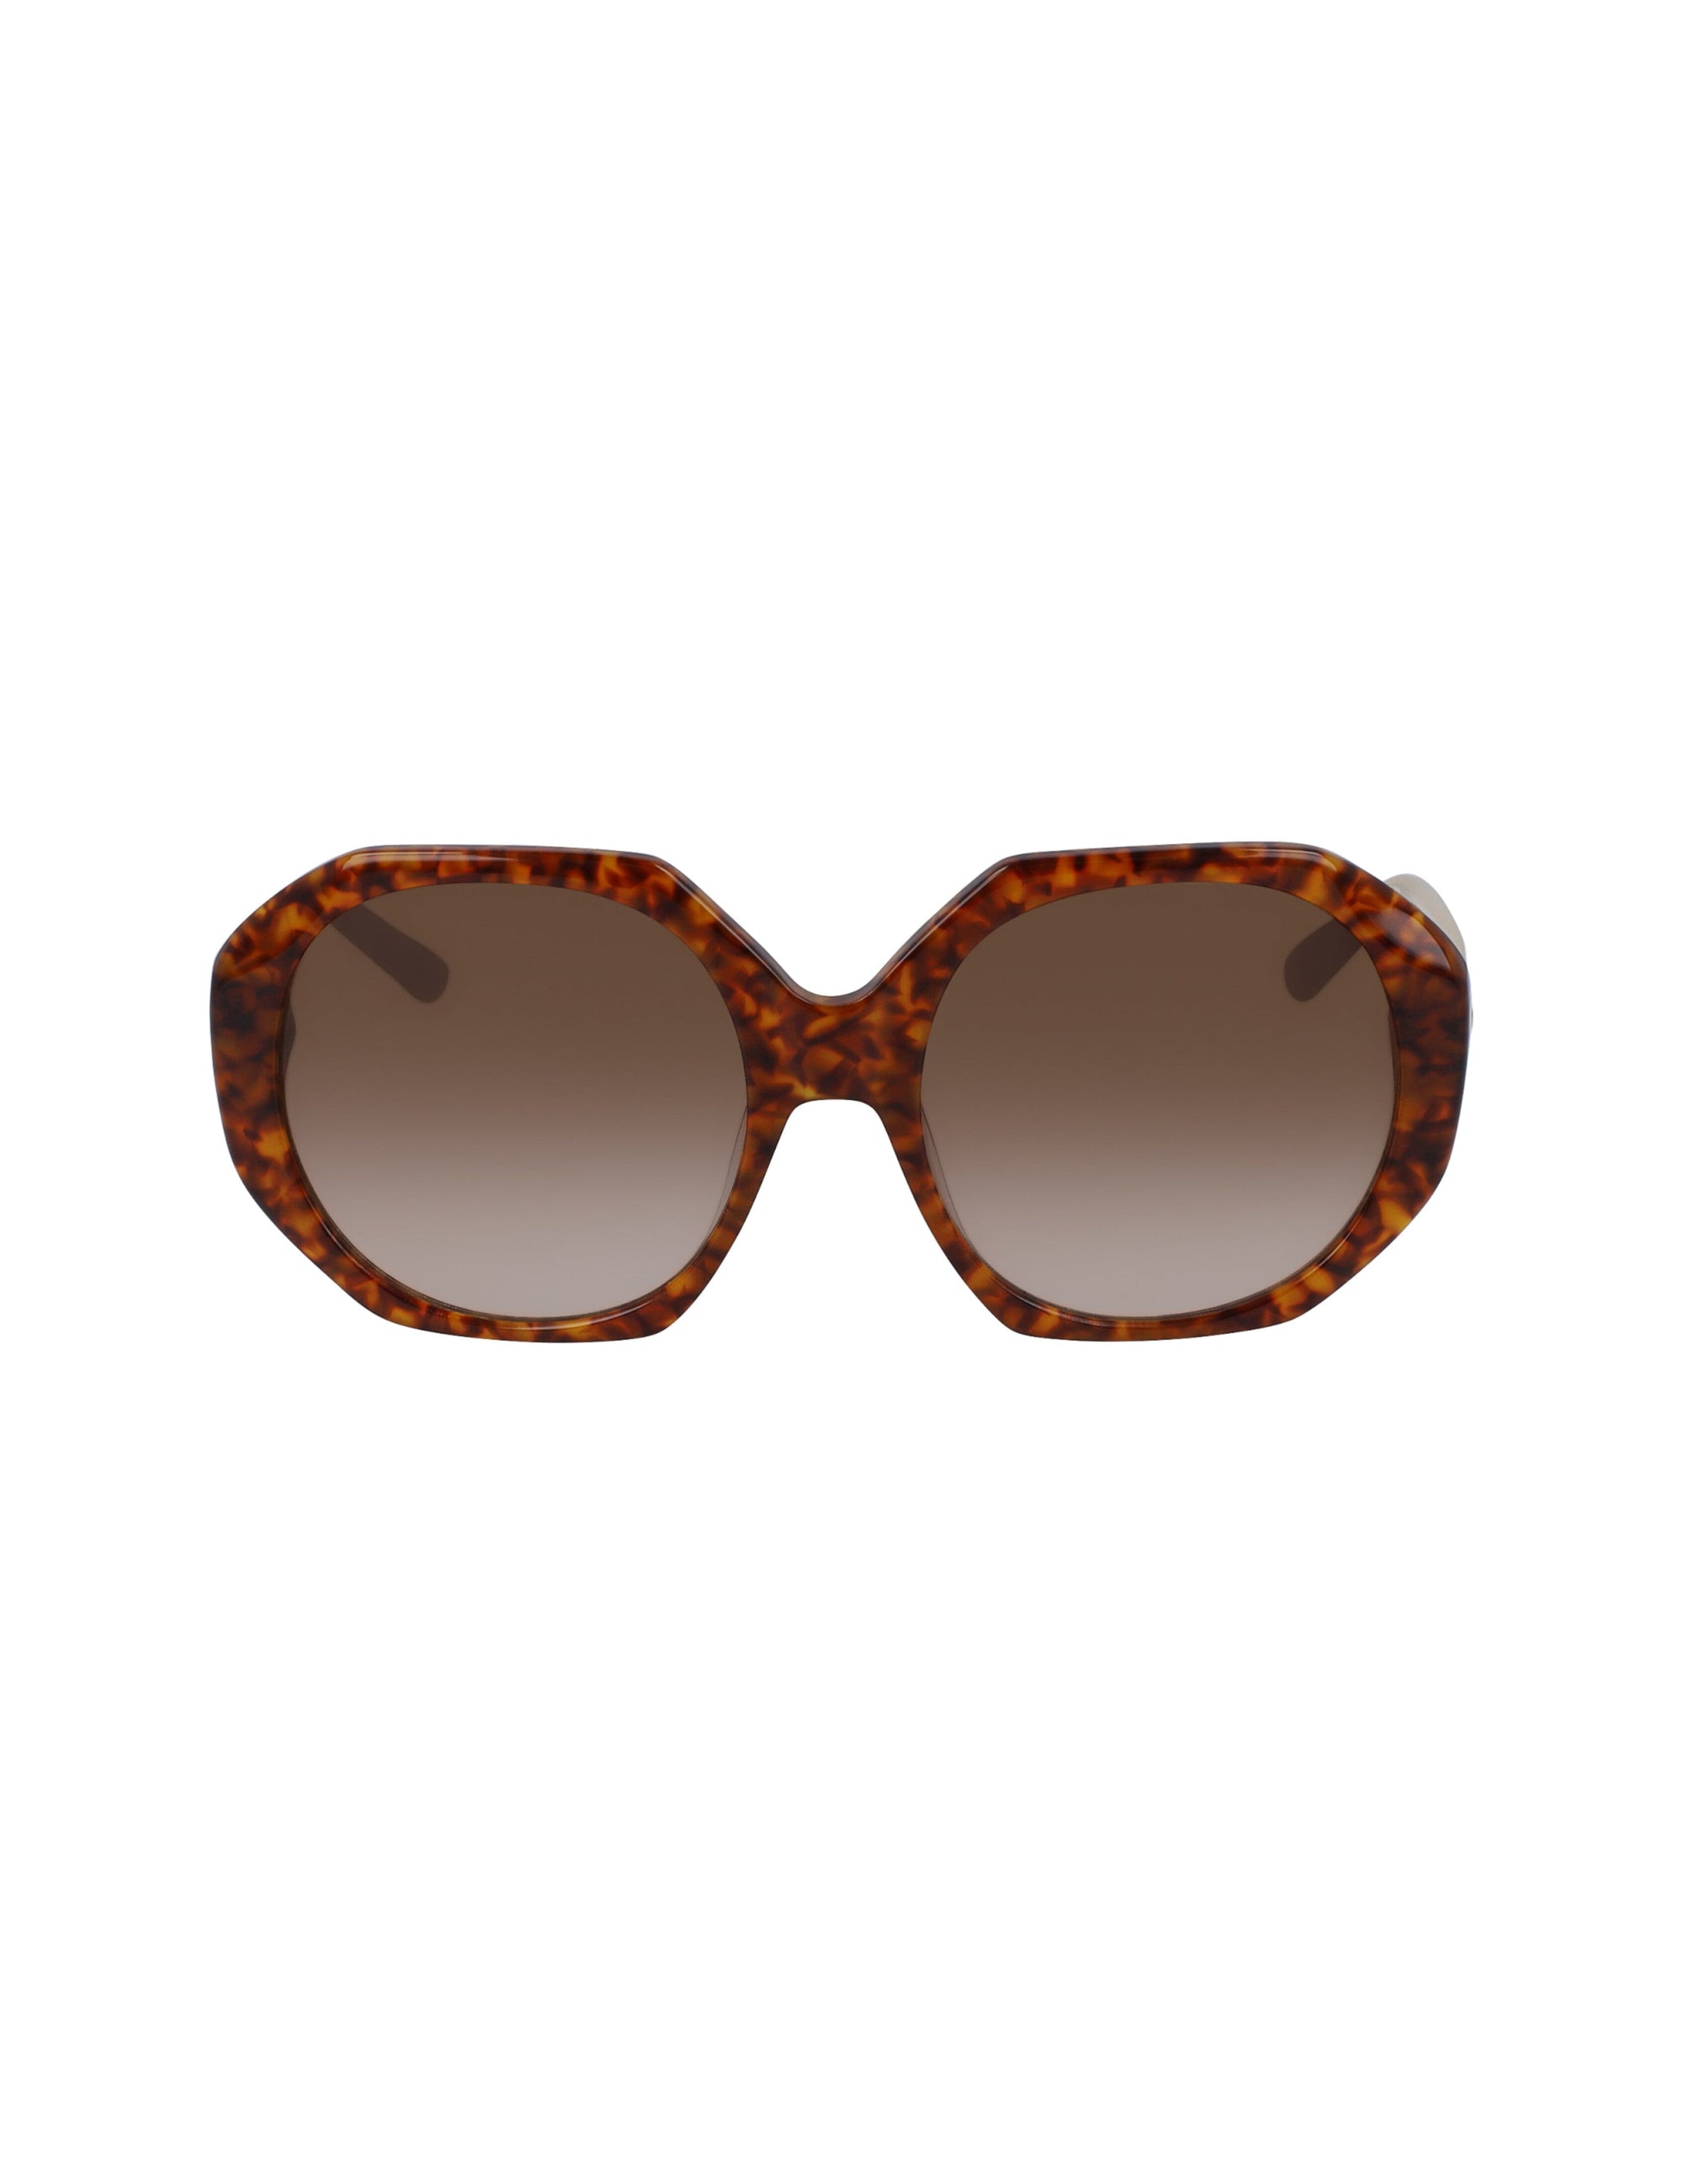 Anne Klein HONEY TORTOISE Tortoise Geometric Oversized Sunglasses